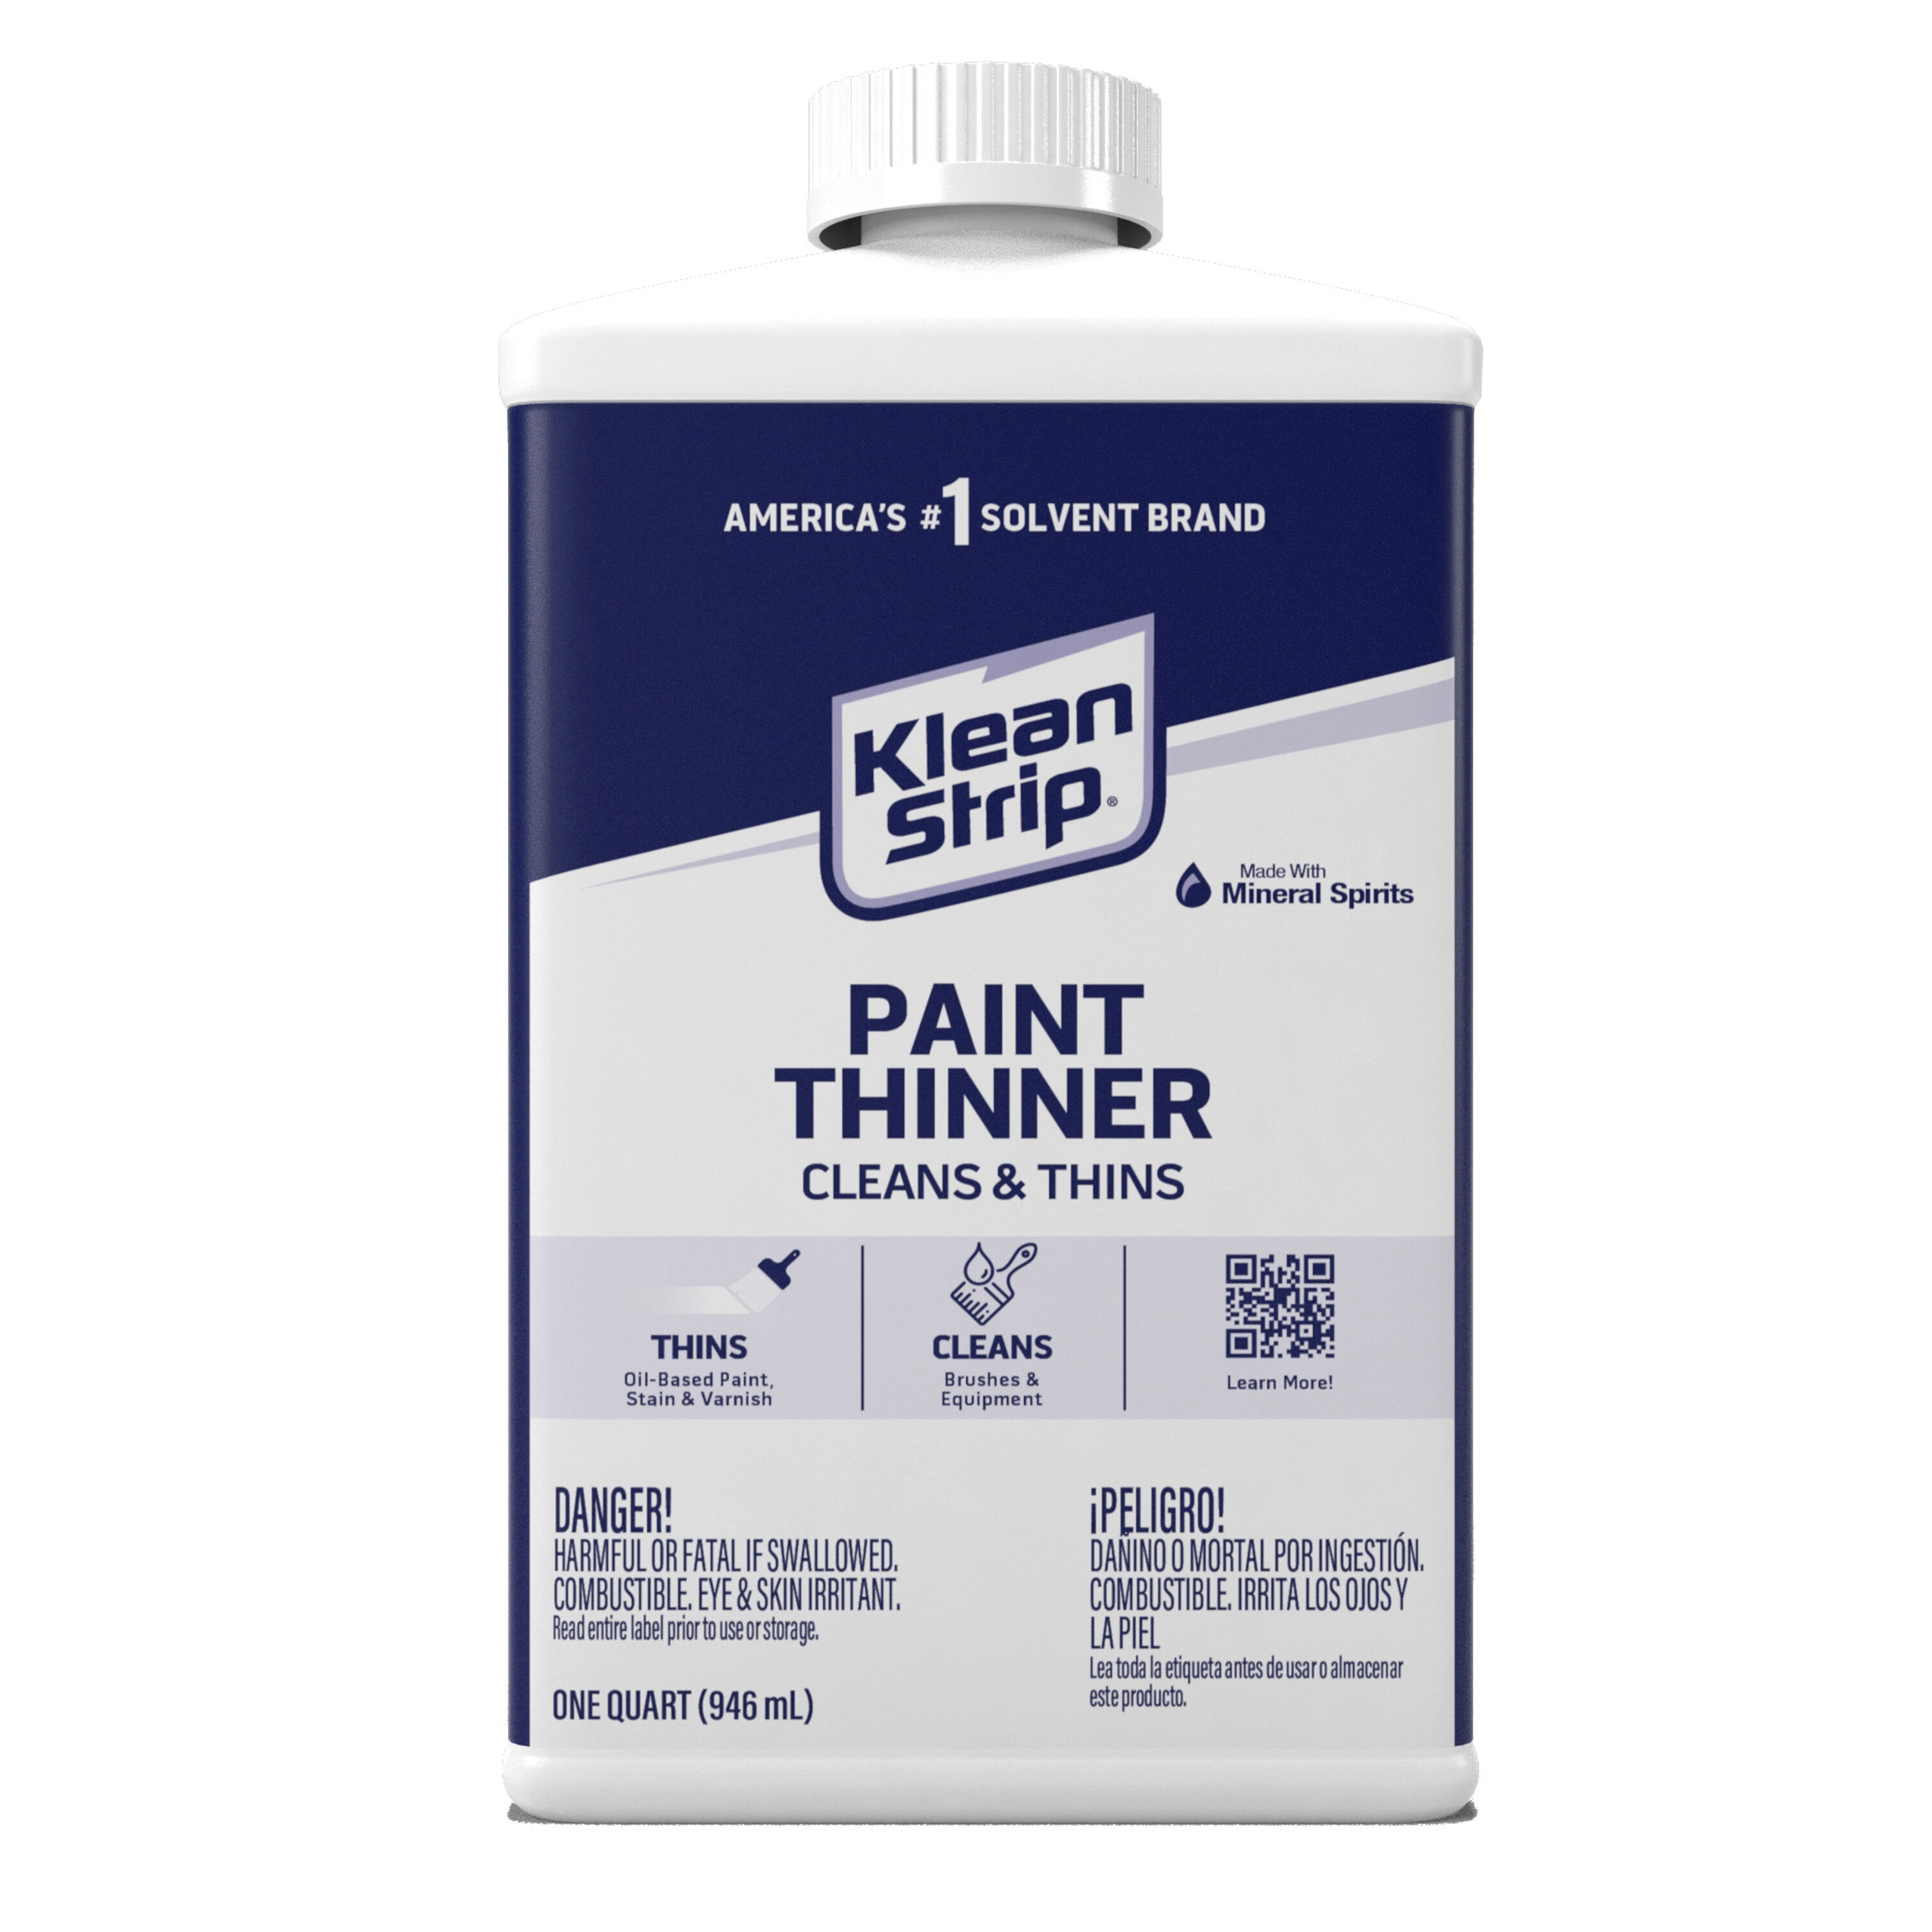 Methyl ethyl ketone (MEK) Paint Thinners at